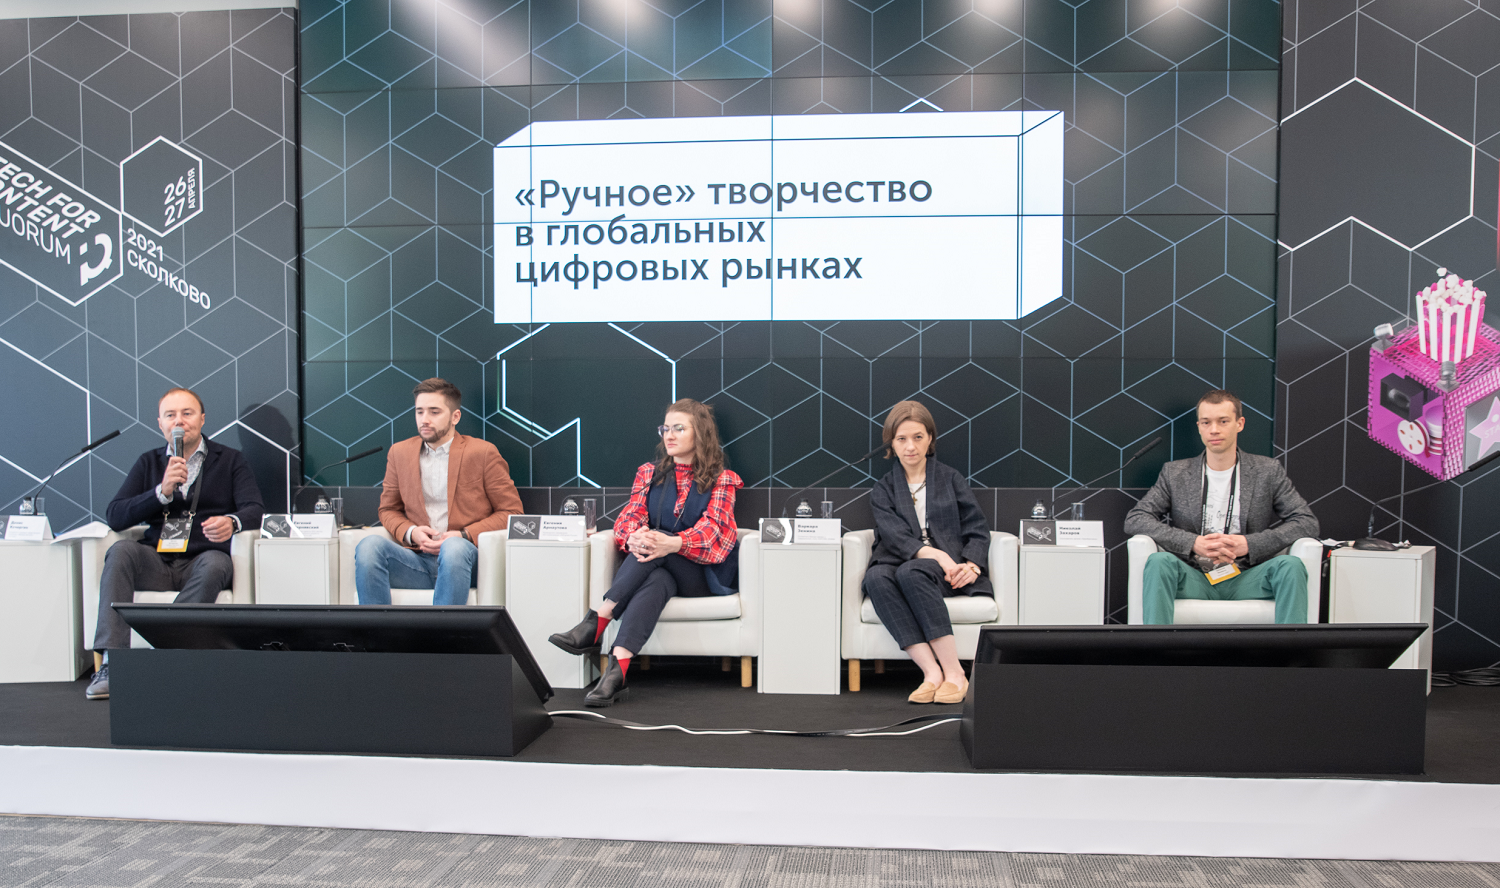 Новые возможности выхода народных промыслов на глобальные рынки были освещены на форуме в Сколково